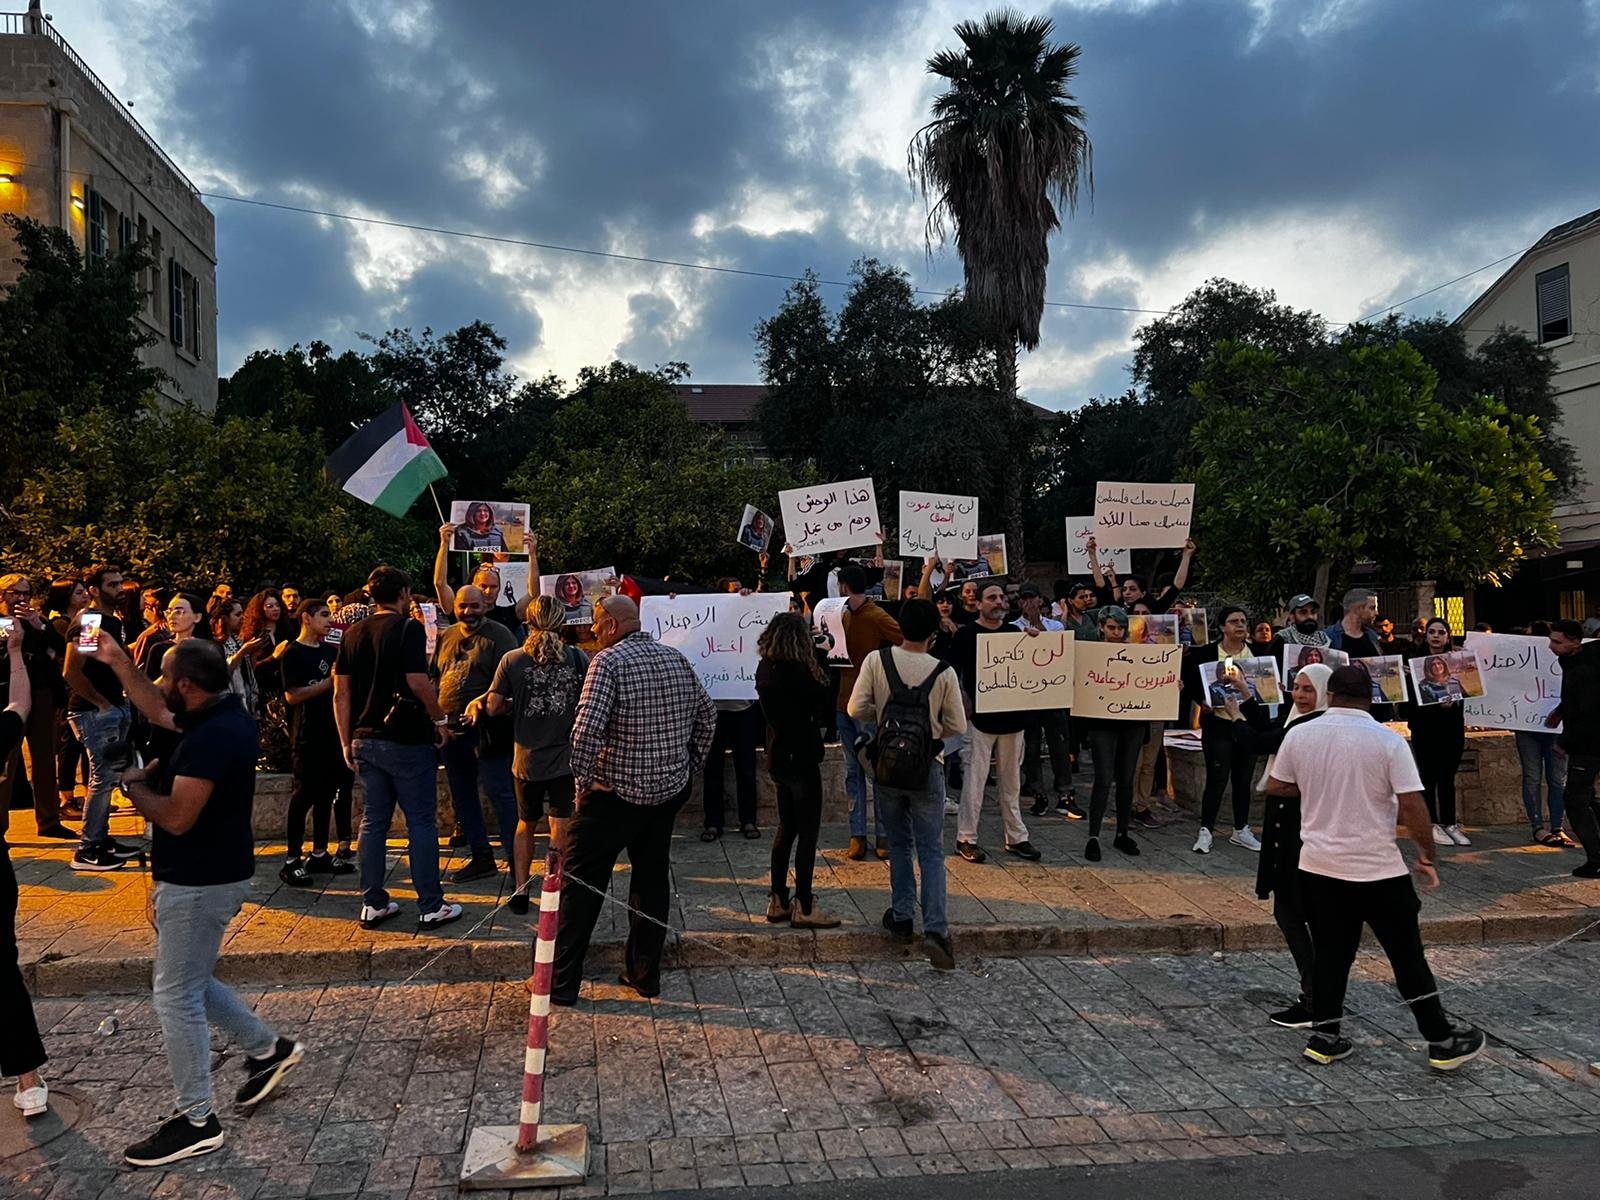 صور الشهيدة وأعلام فلسطينية وإغلاق شارع| مظاهرة حاشدة في حيفا في أعقاب اغتيال شيرين أبو عاقلة-15